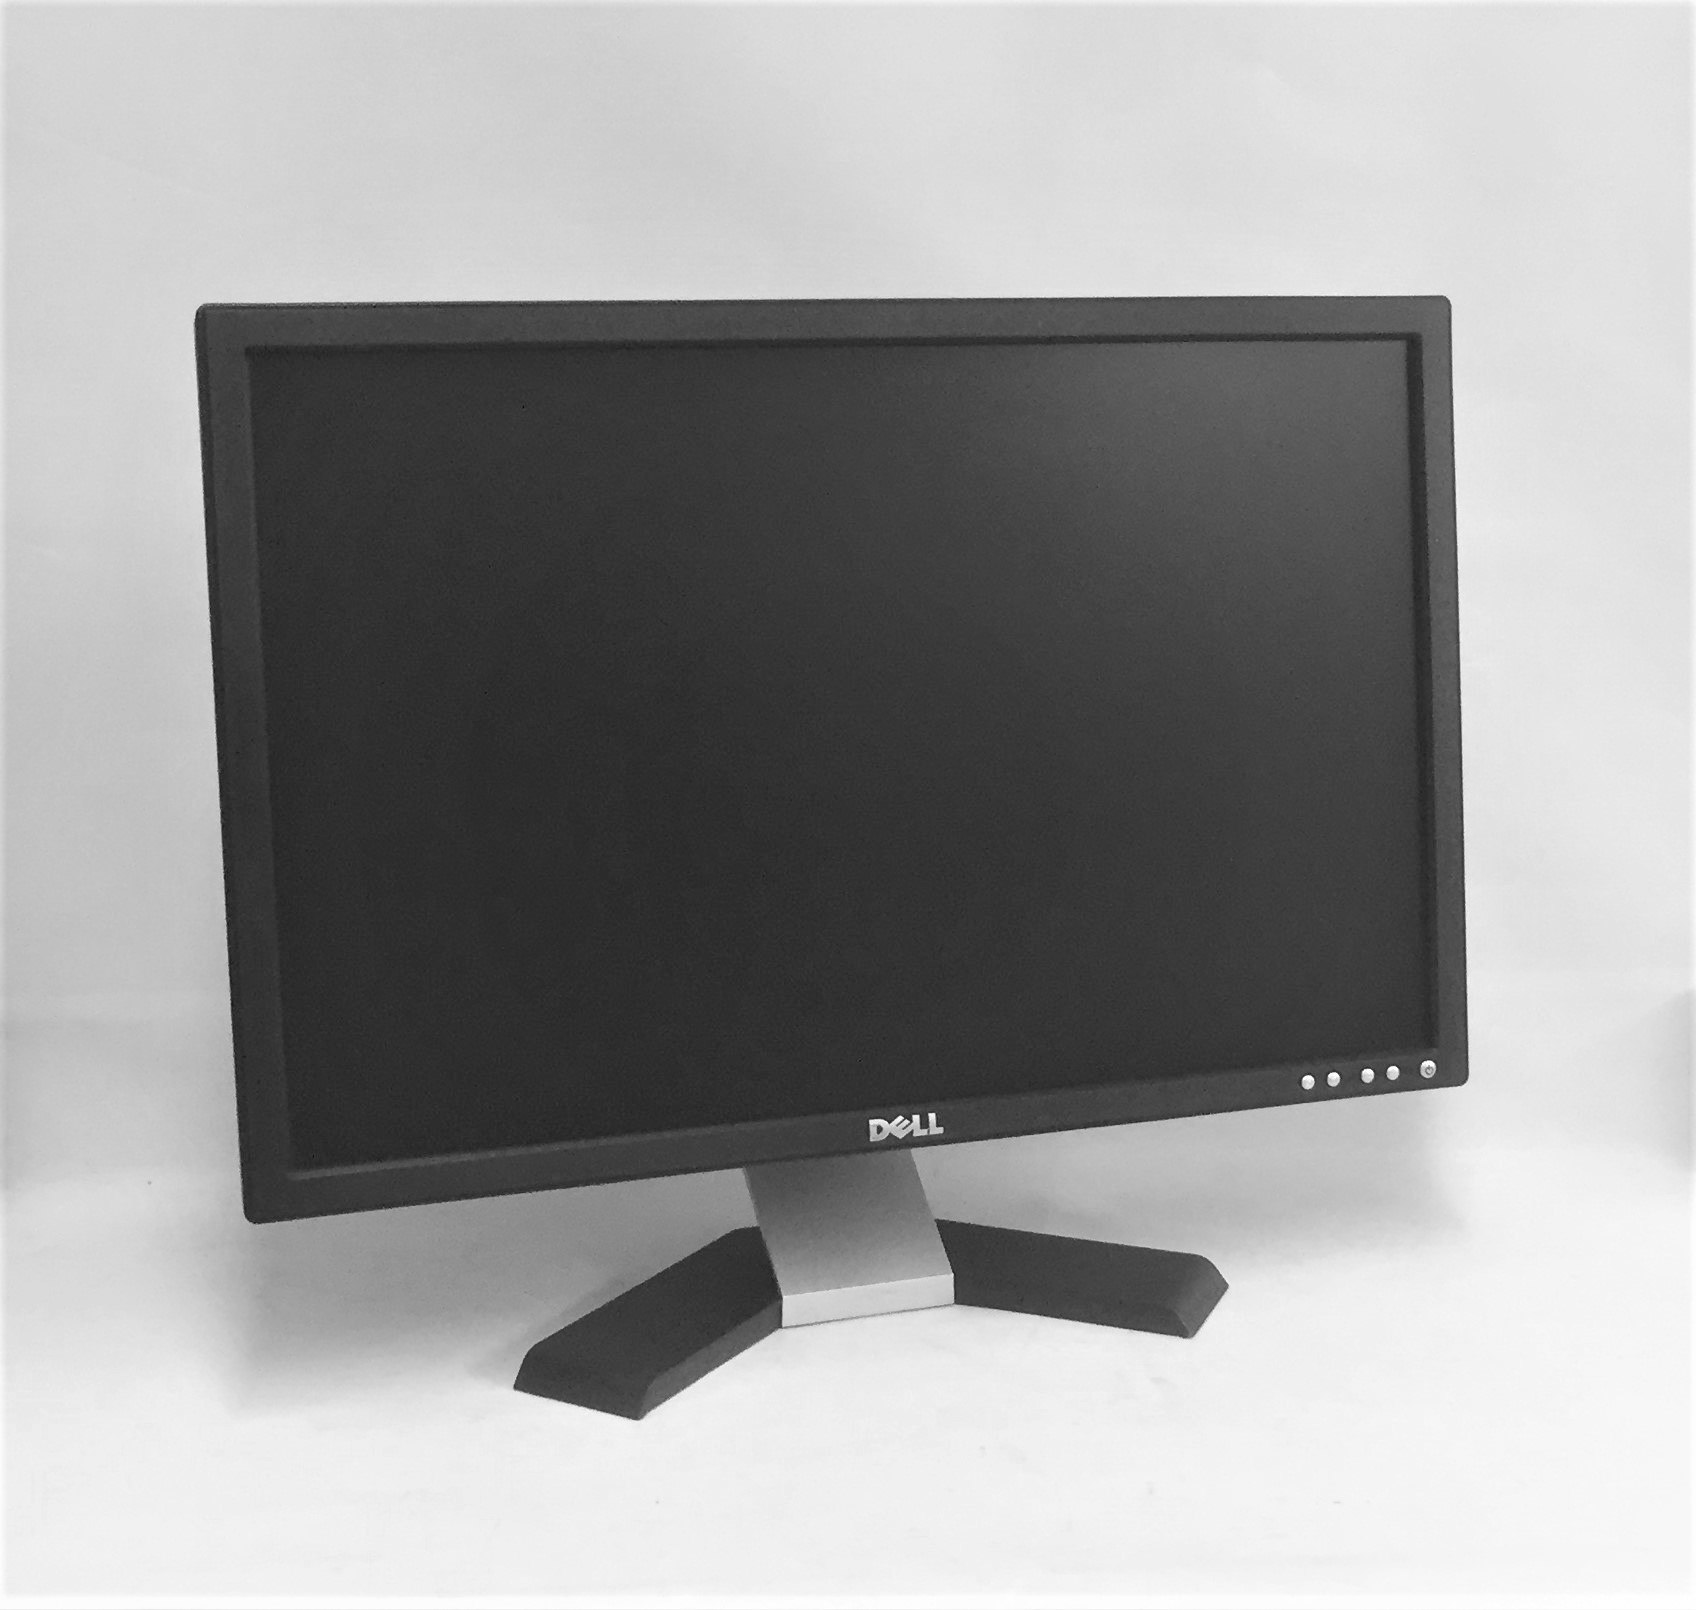 Refurbished Dell E228WFPc LCD Monitor